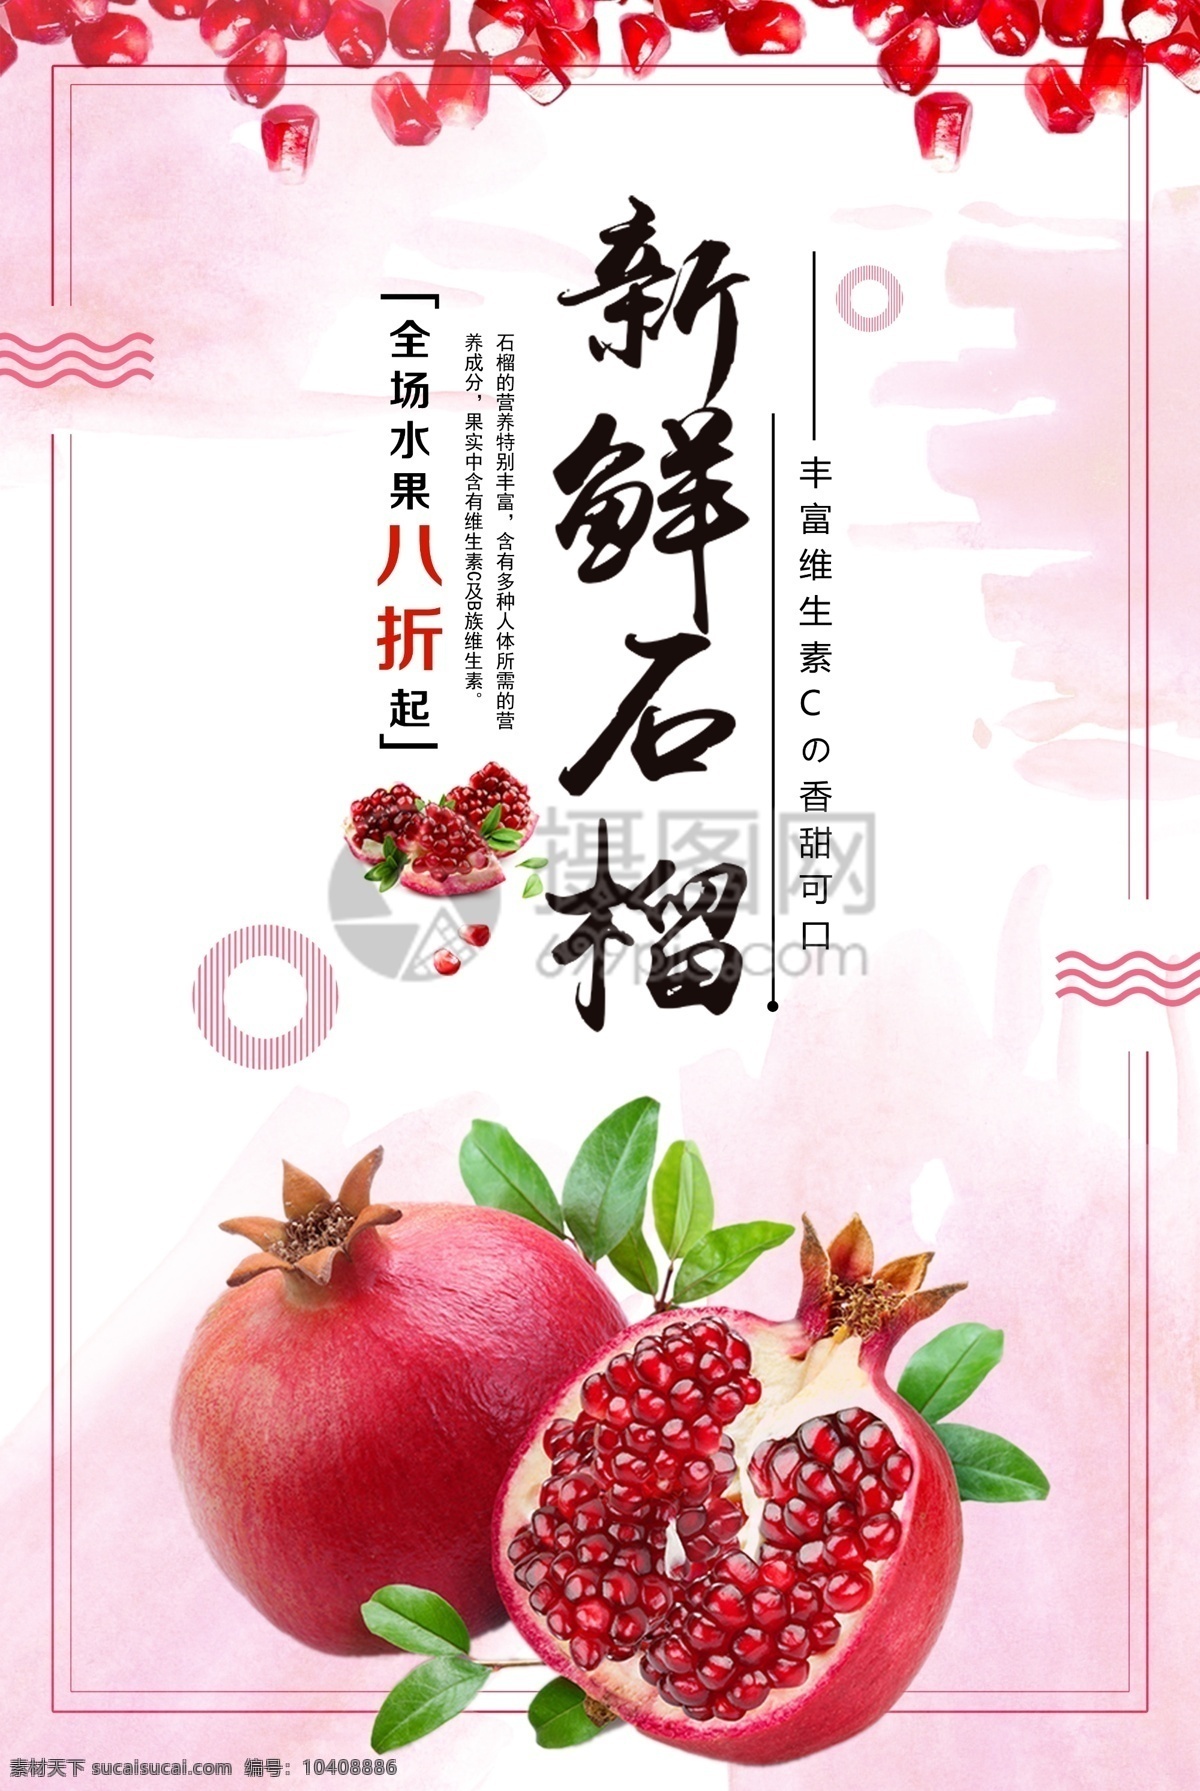 新鲜石榴海报 新鲜石榴 石榴 水果 果粒 水果海报 促销 应季水果 美食餐饮 海报